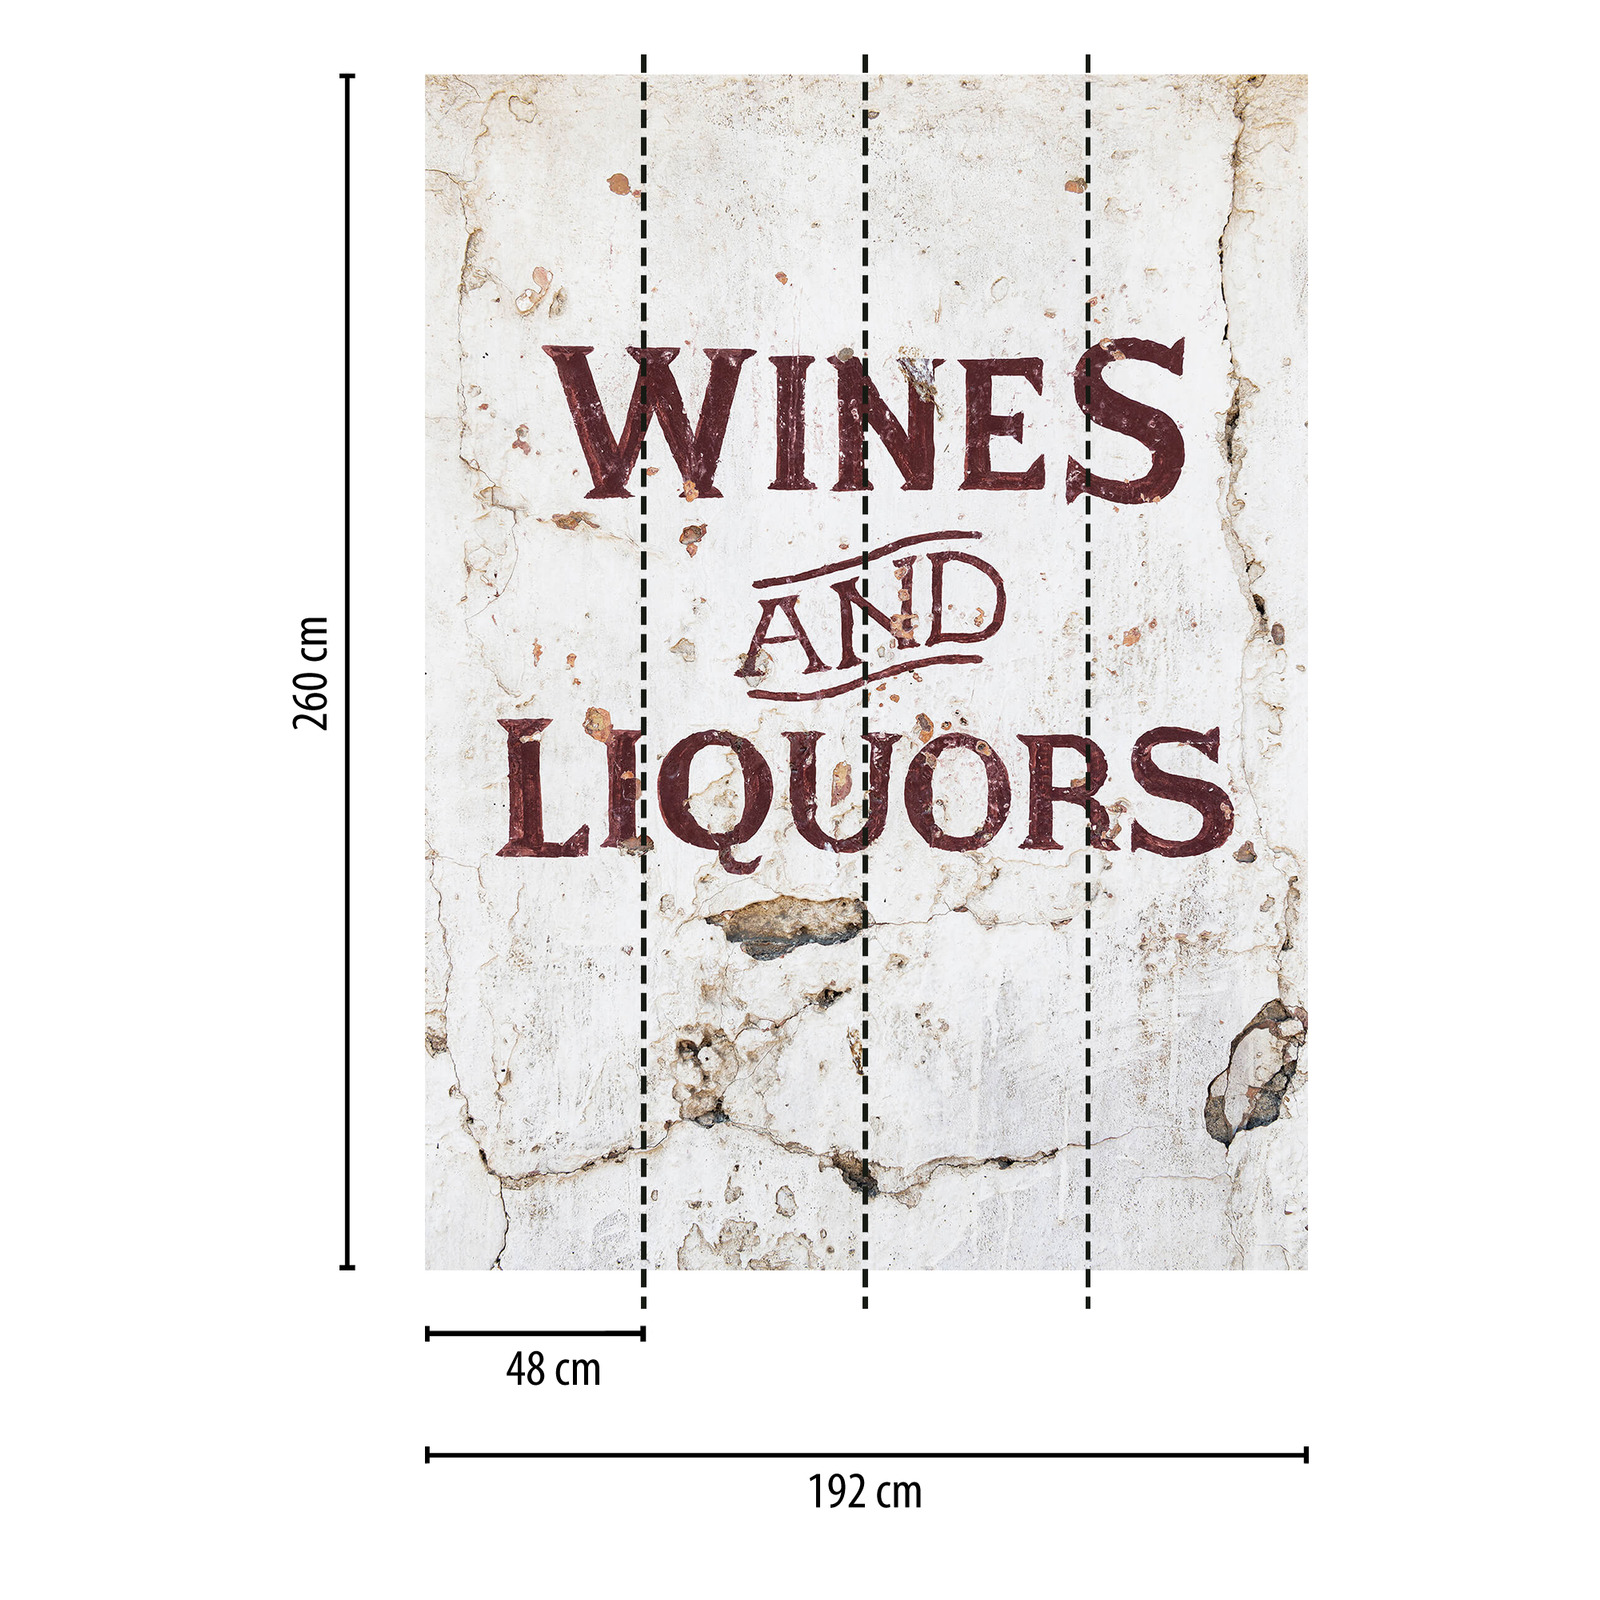             Wijn & Alcohol Behang
        